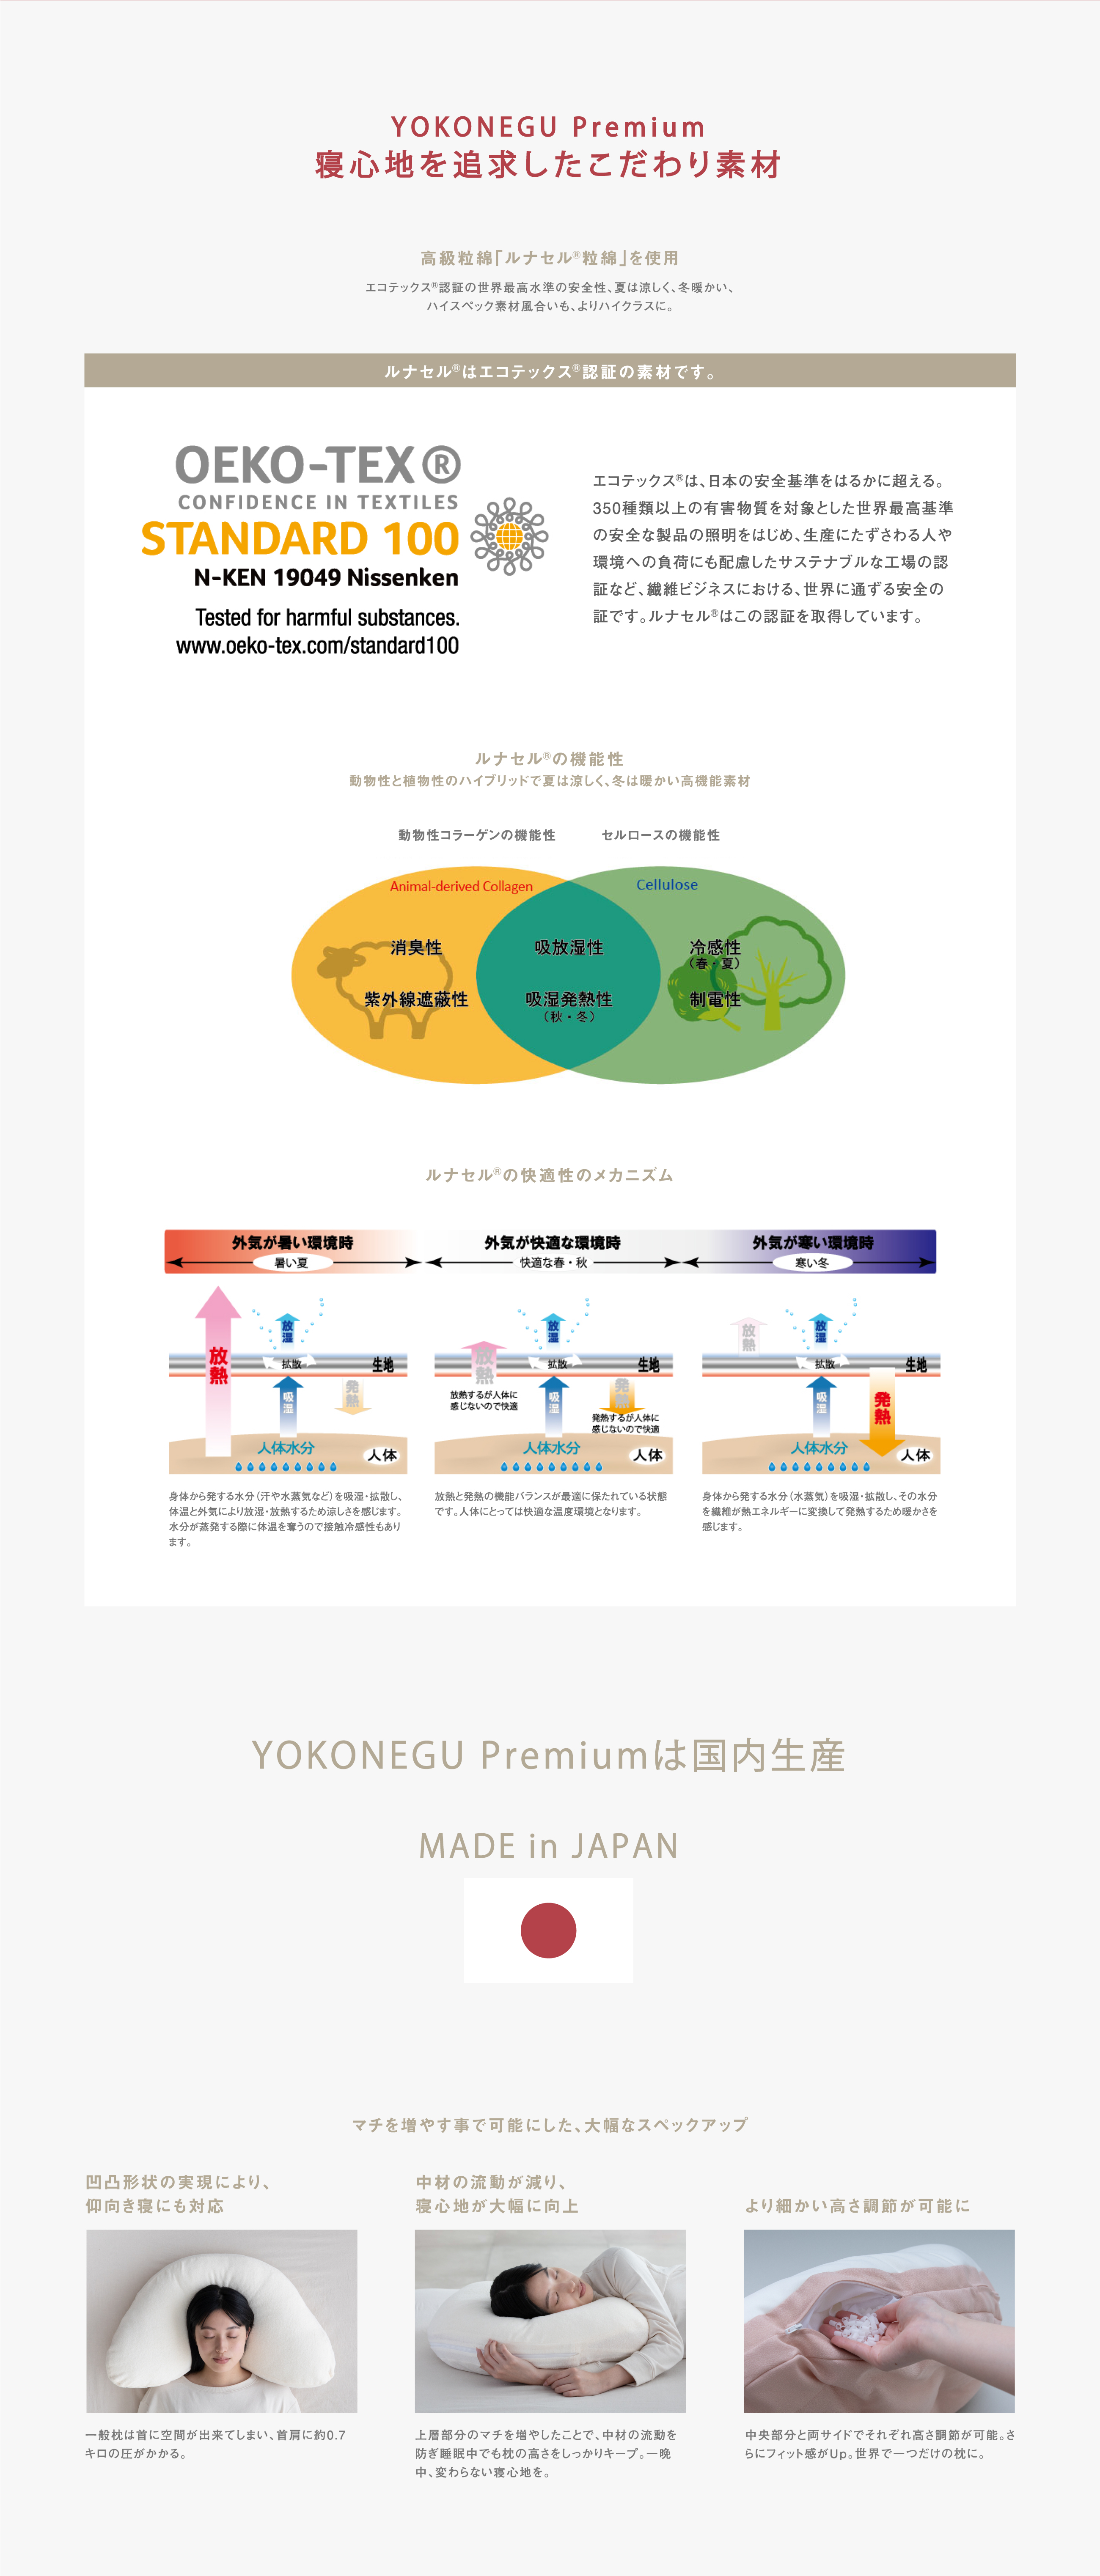 YOKONEGU premiumはさらにアップグレード